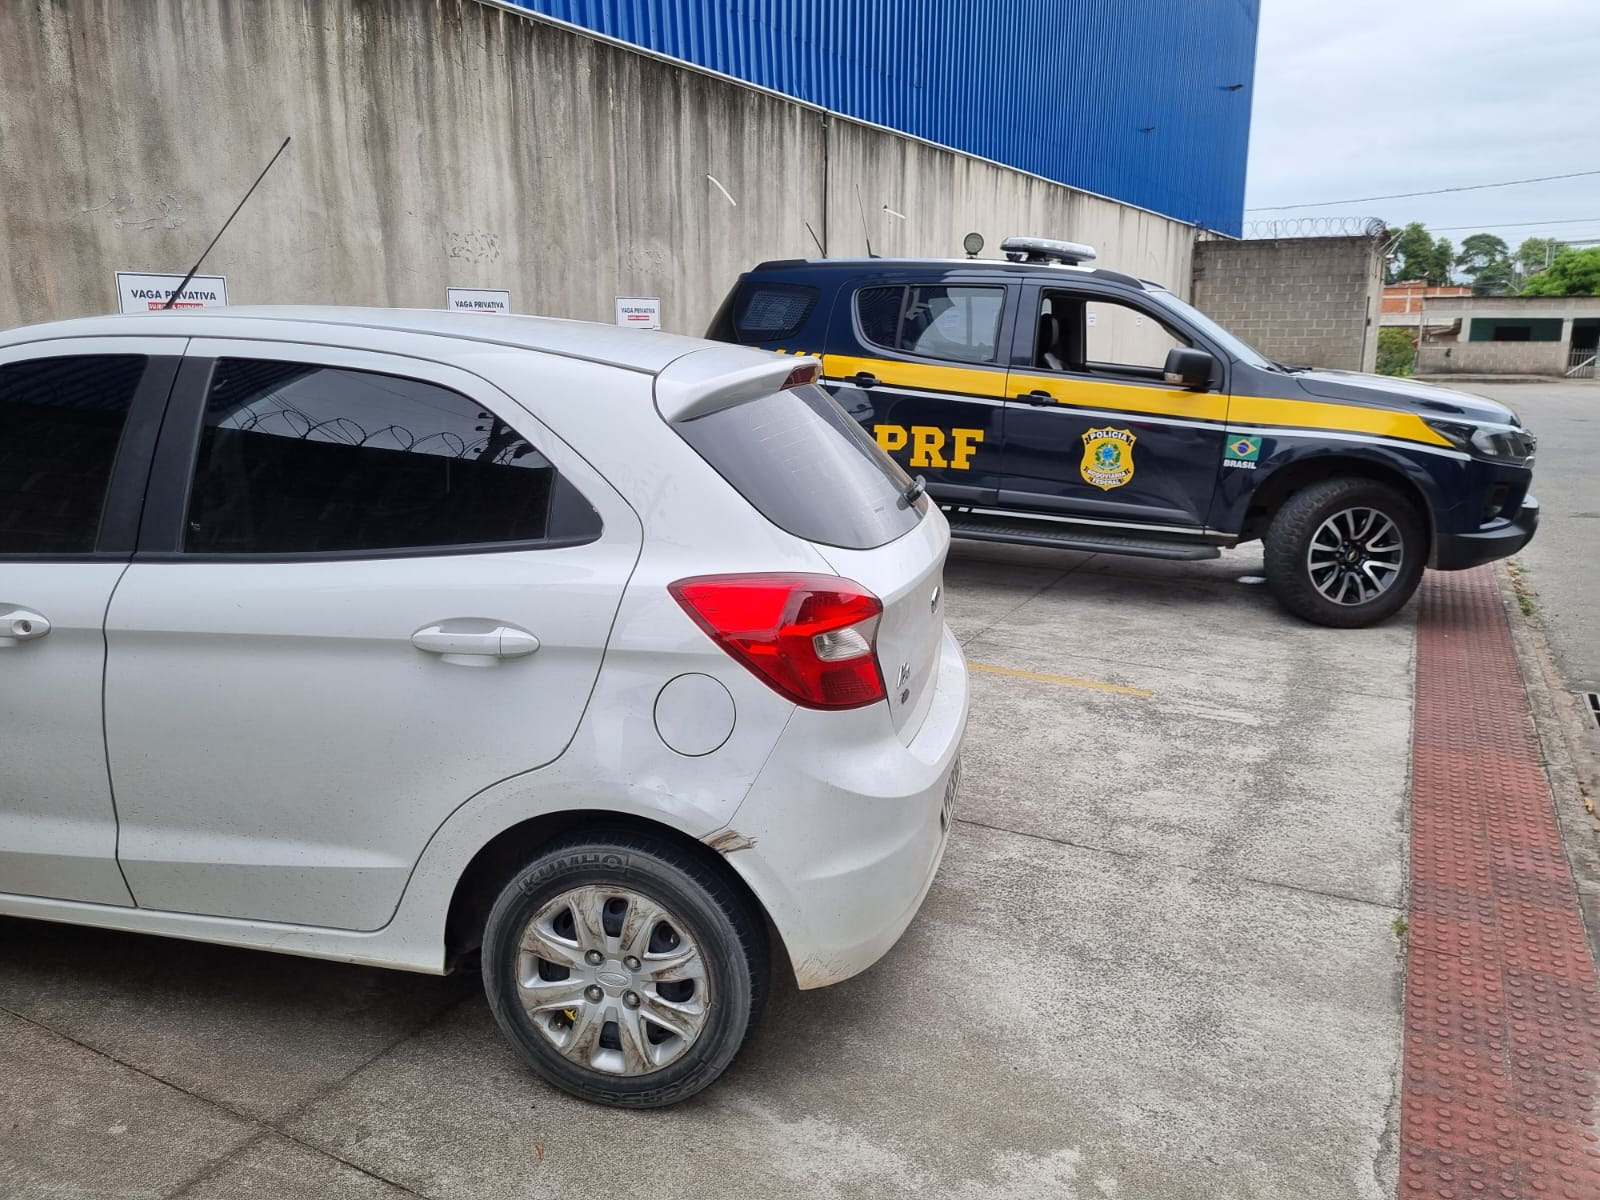 Polícia Rodoviária Federal (PRF) realizava patrulhamento na região de Laranjeiras, quando foi informada sobre sequestro, o segundo em menos de 24h no município